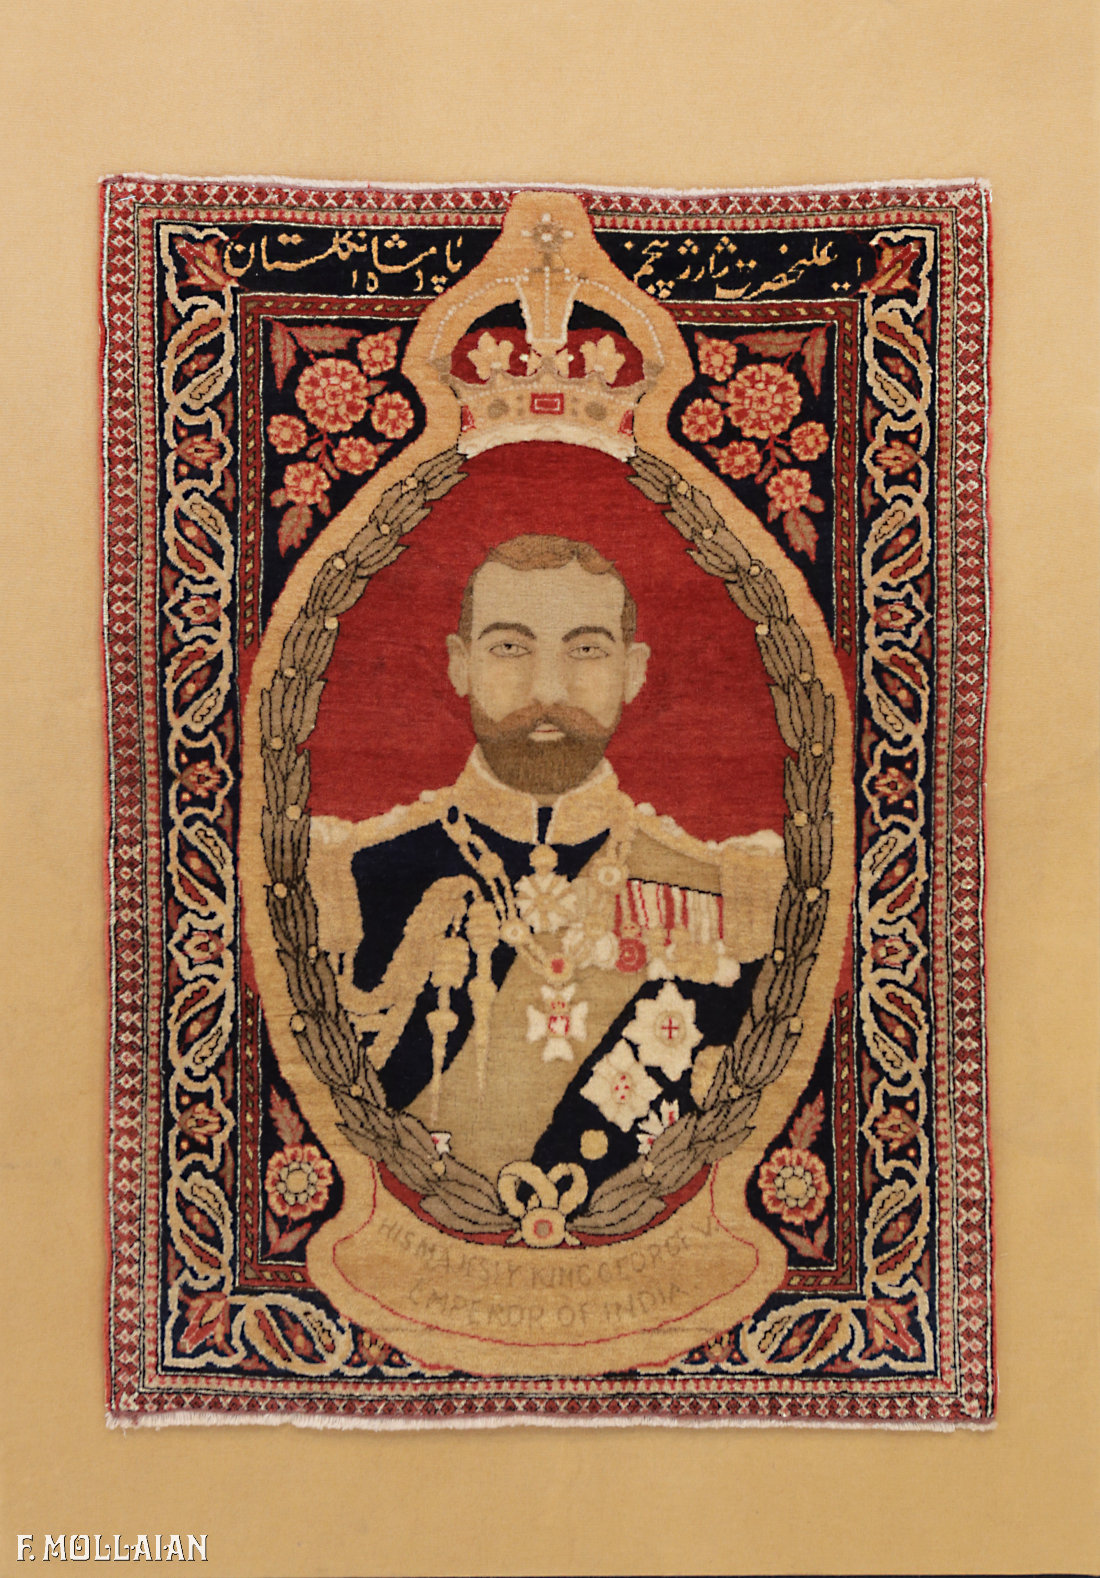 Teppich Persischer Antiker Kashan Mohtasham n°:60206999